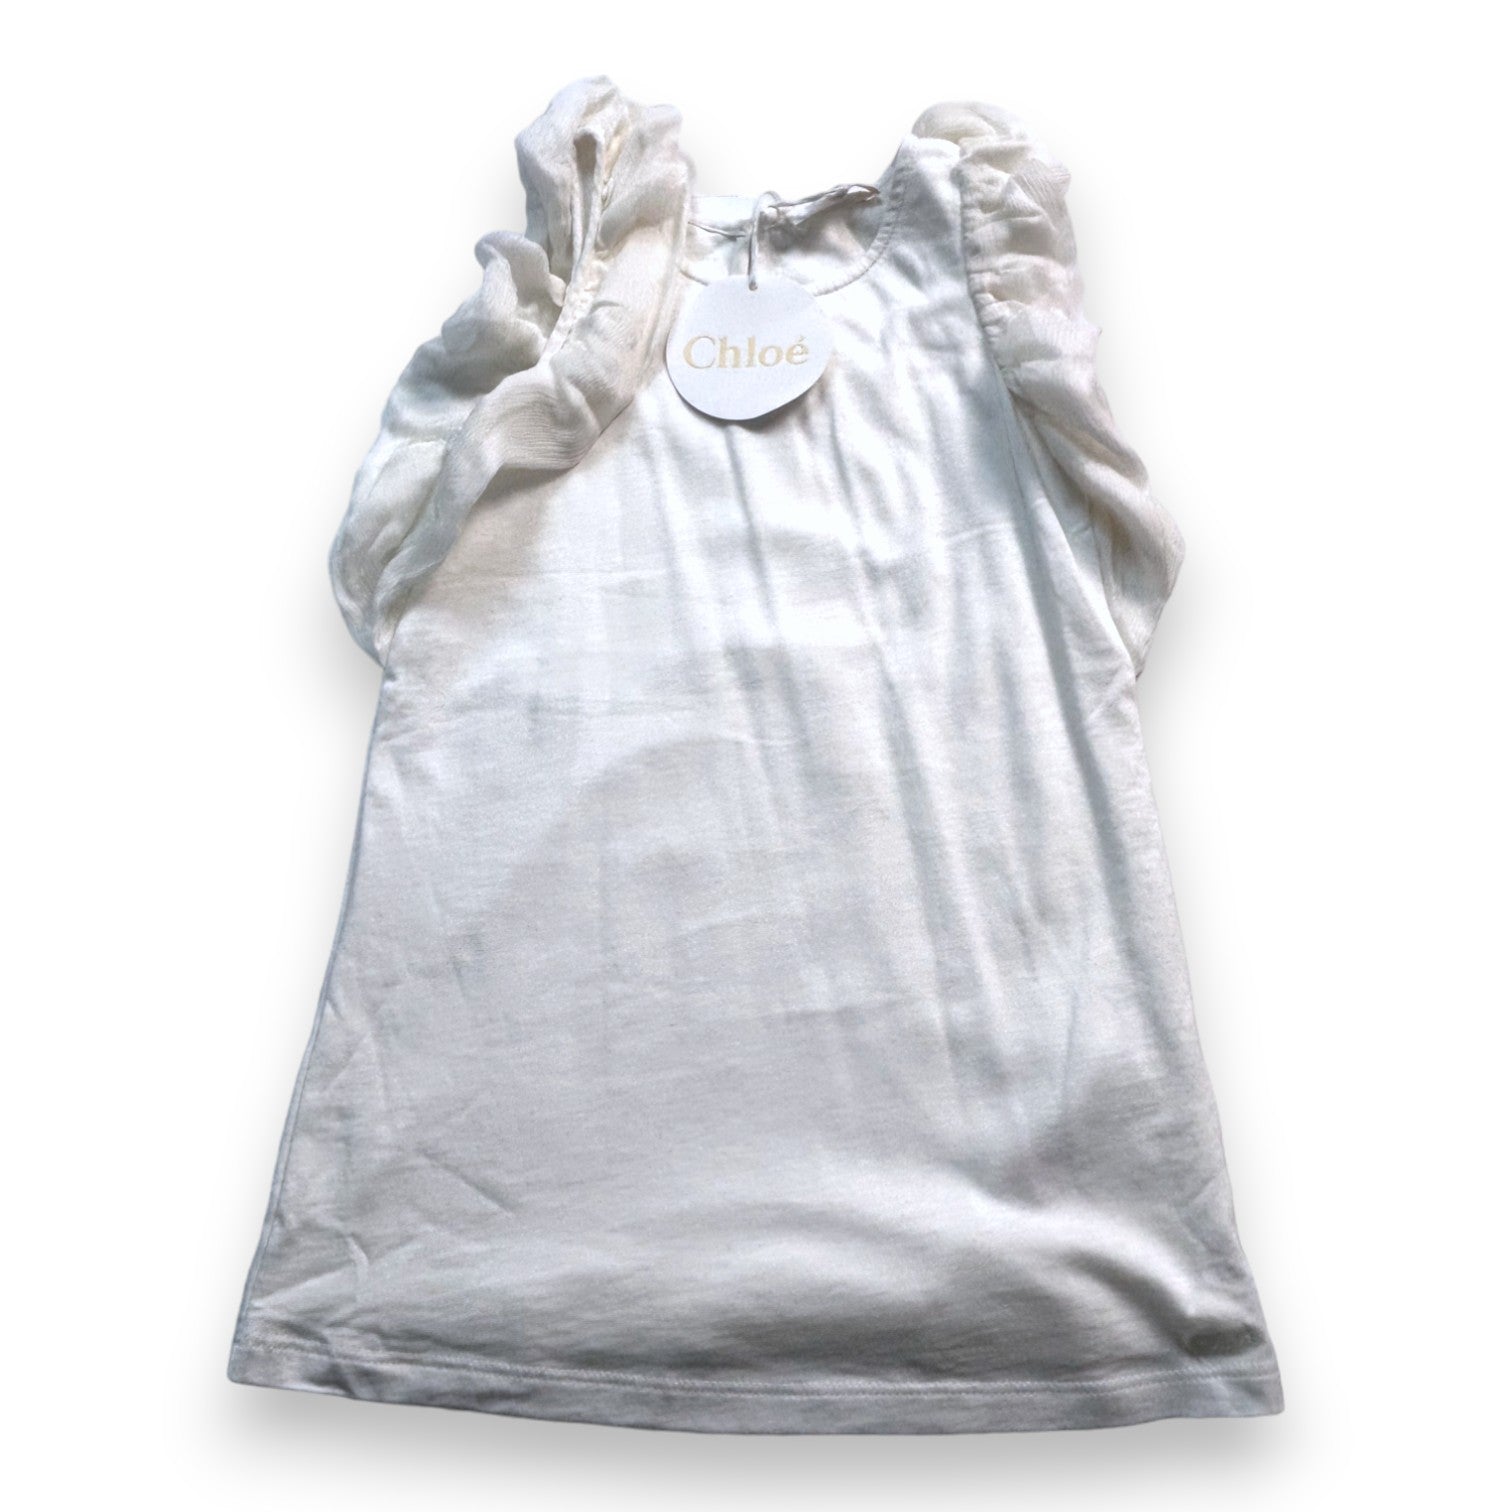 CHLOE - Robe blanche fluide en soie (neuf) - 4 ans